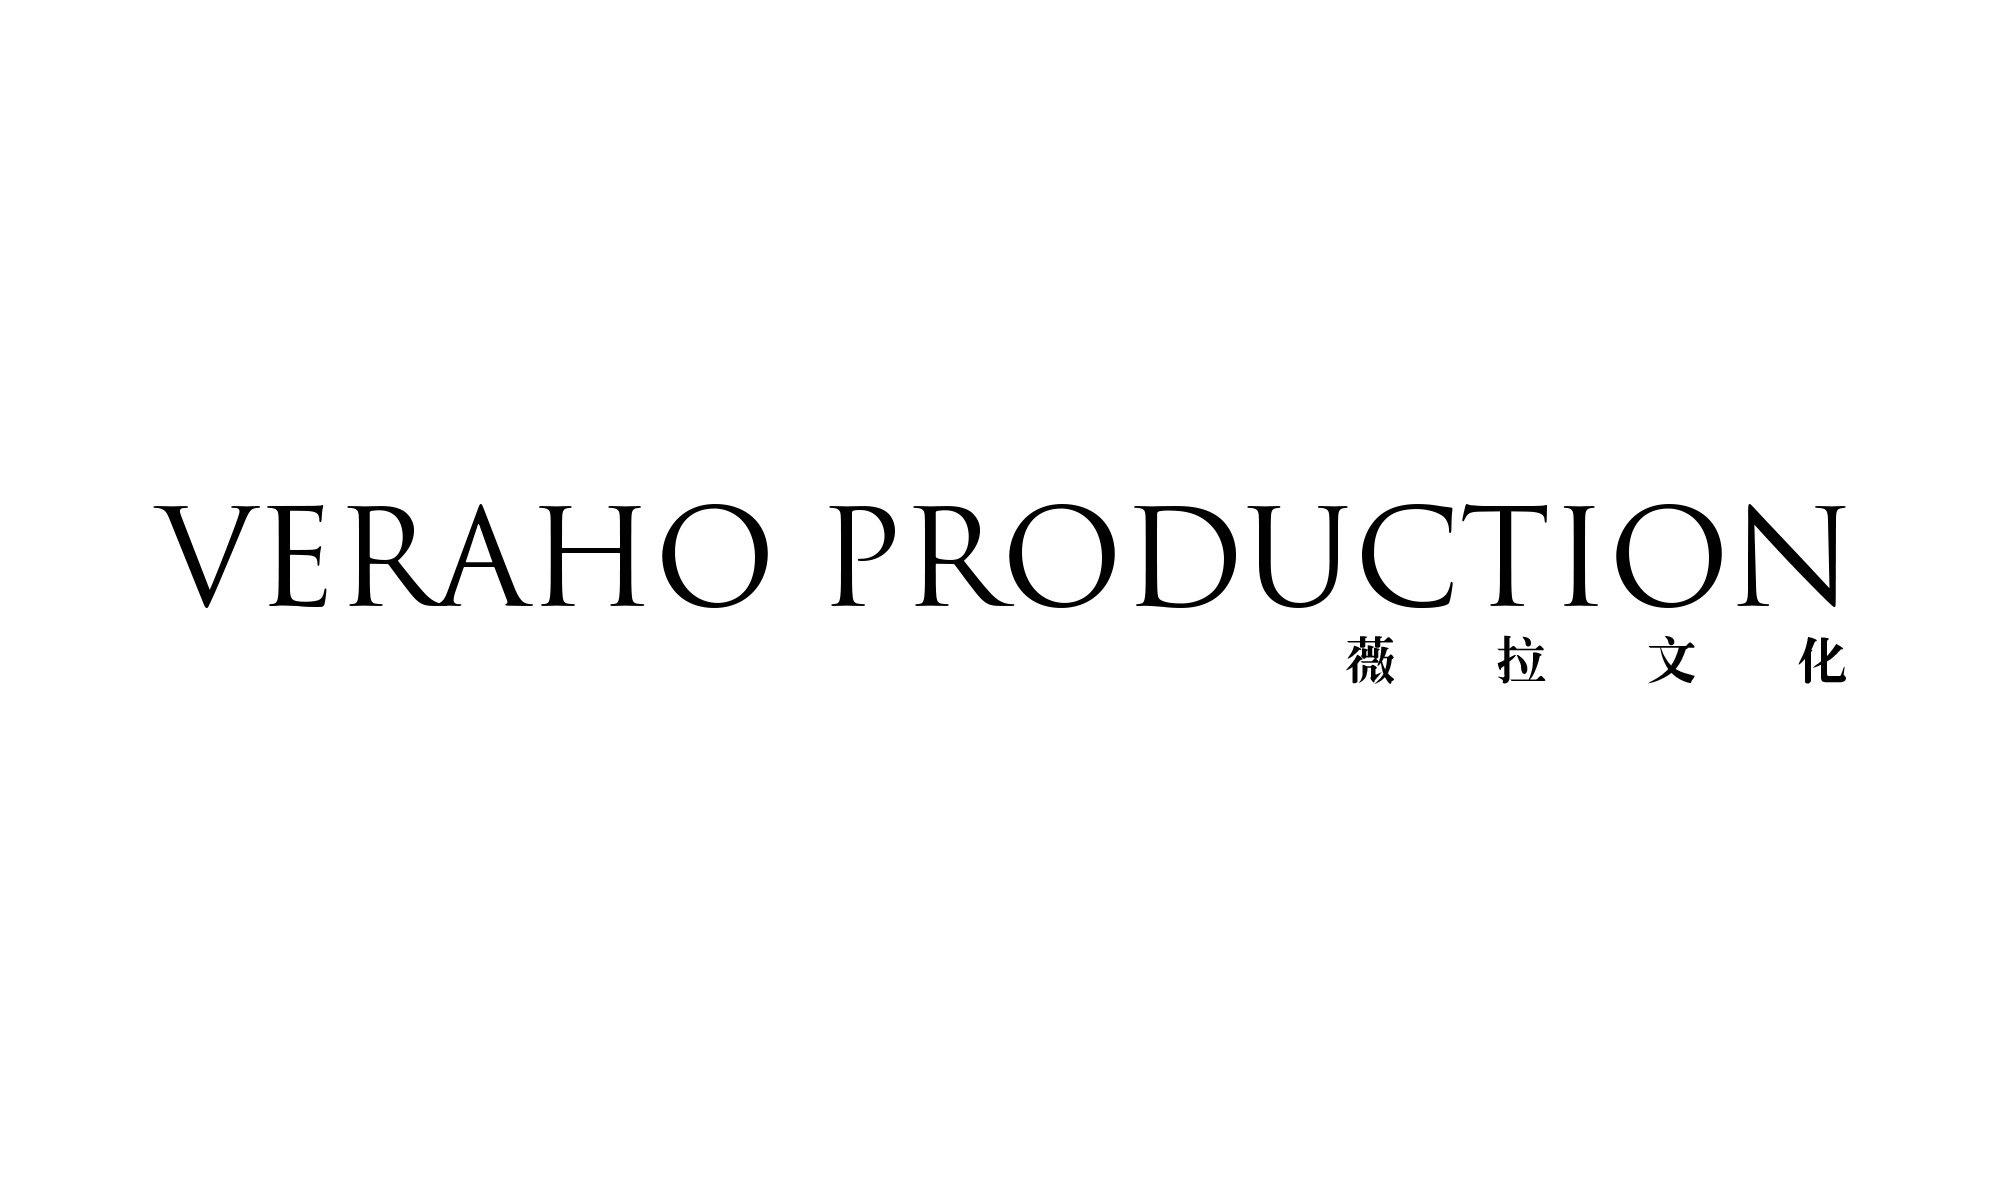 VERAHO PRODUCTION